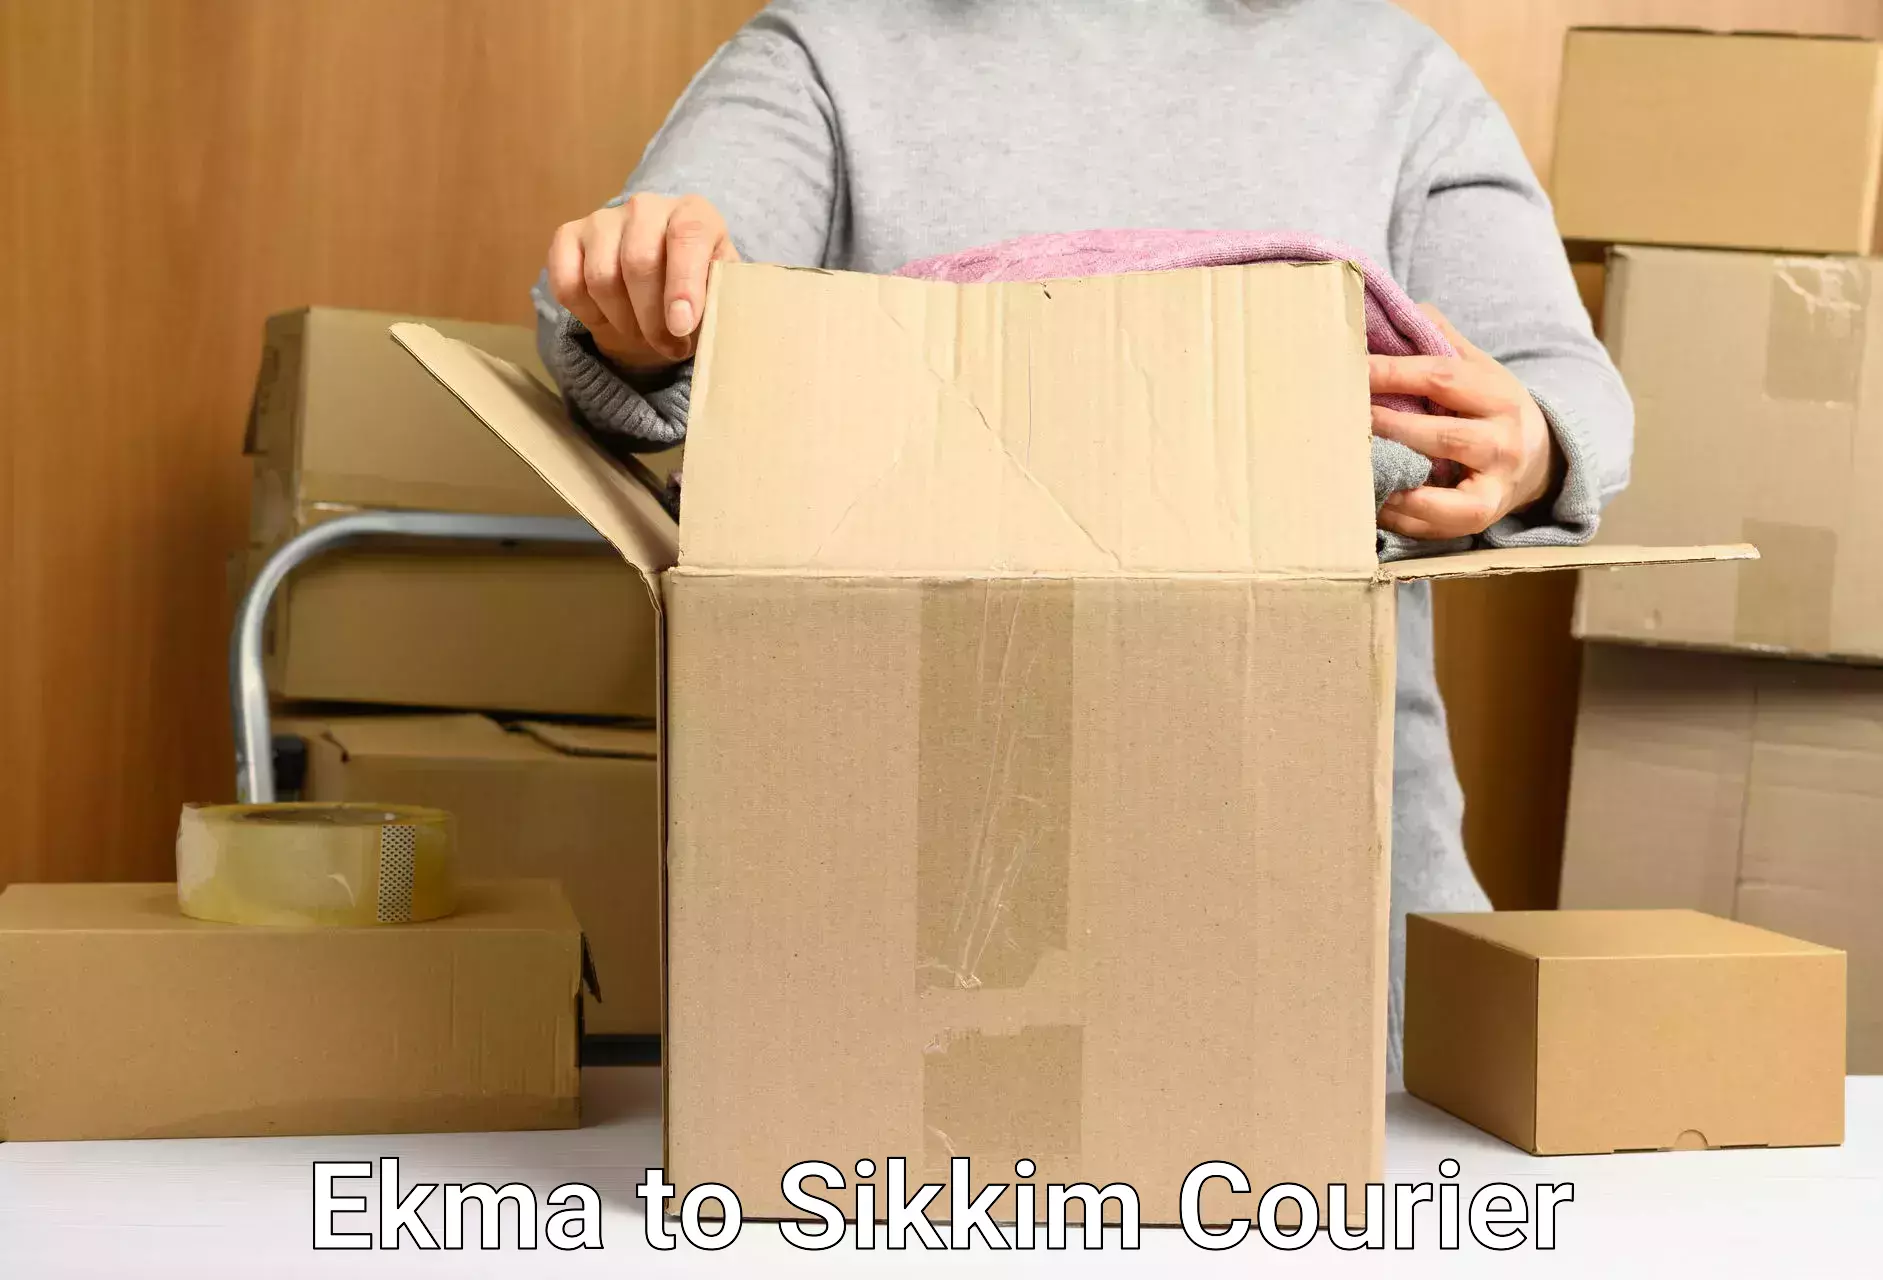 Discounted shipping Ekma to Gangtok